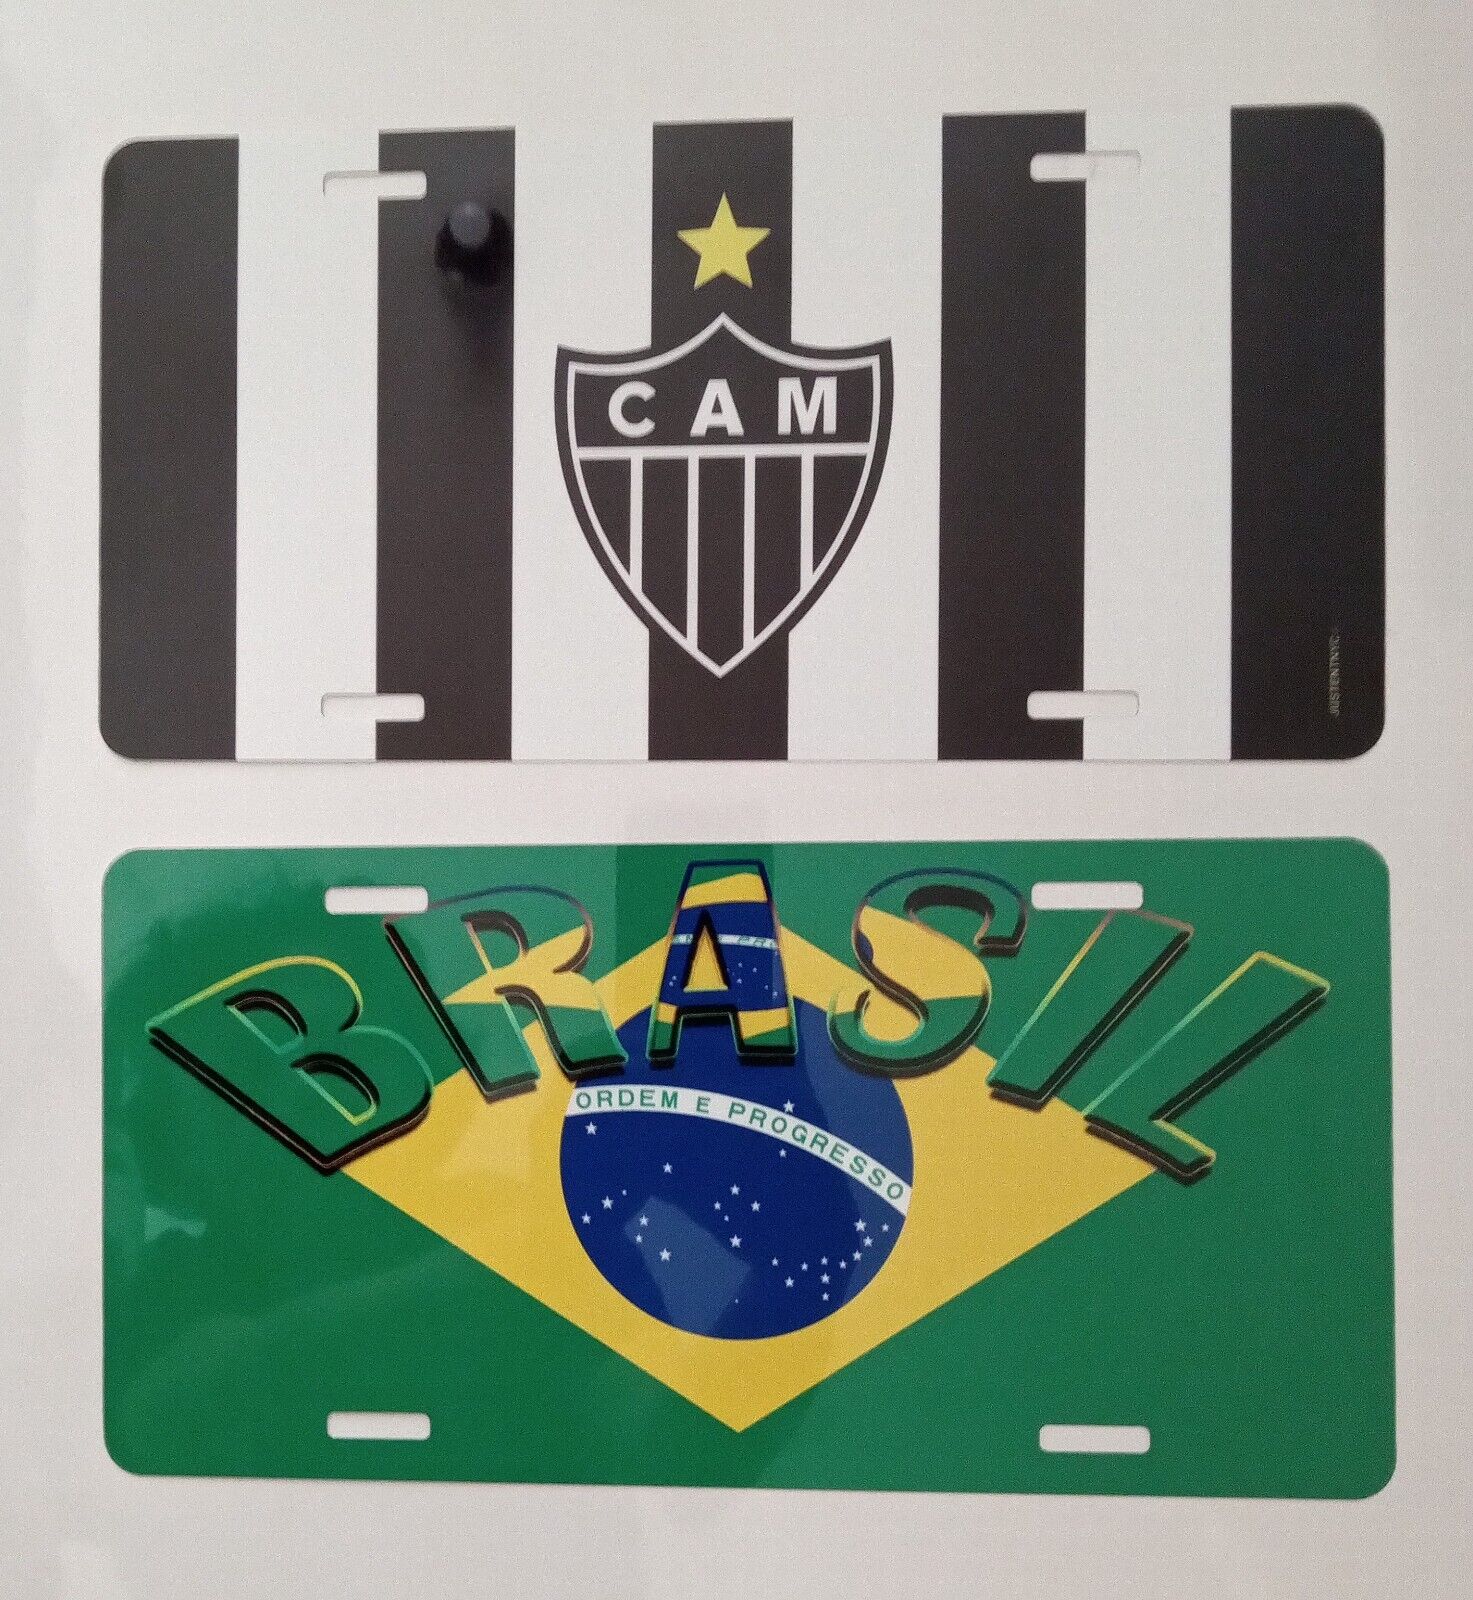 2 BRAZIL GIFTS: 1 COPA AMERICA LICENSE PLATE + 1 ATLETICO MINEIRO LIC PLATE $30